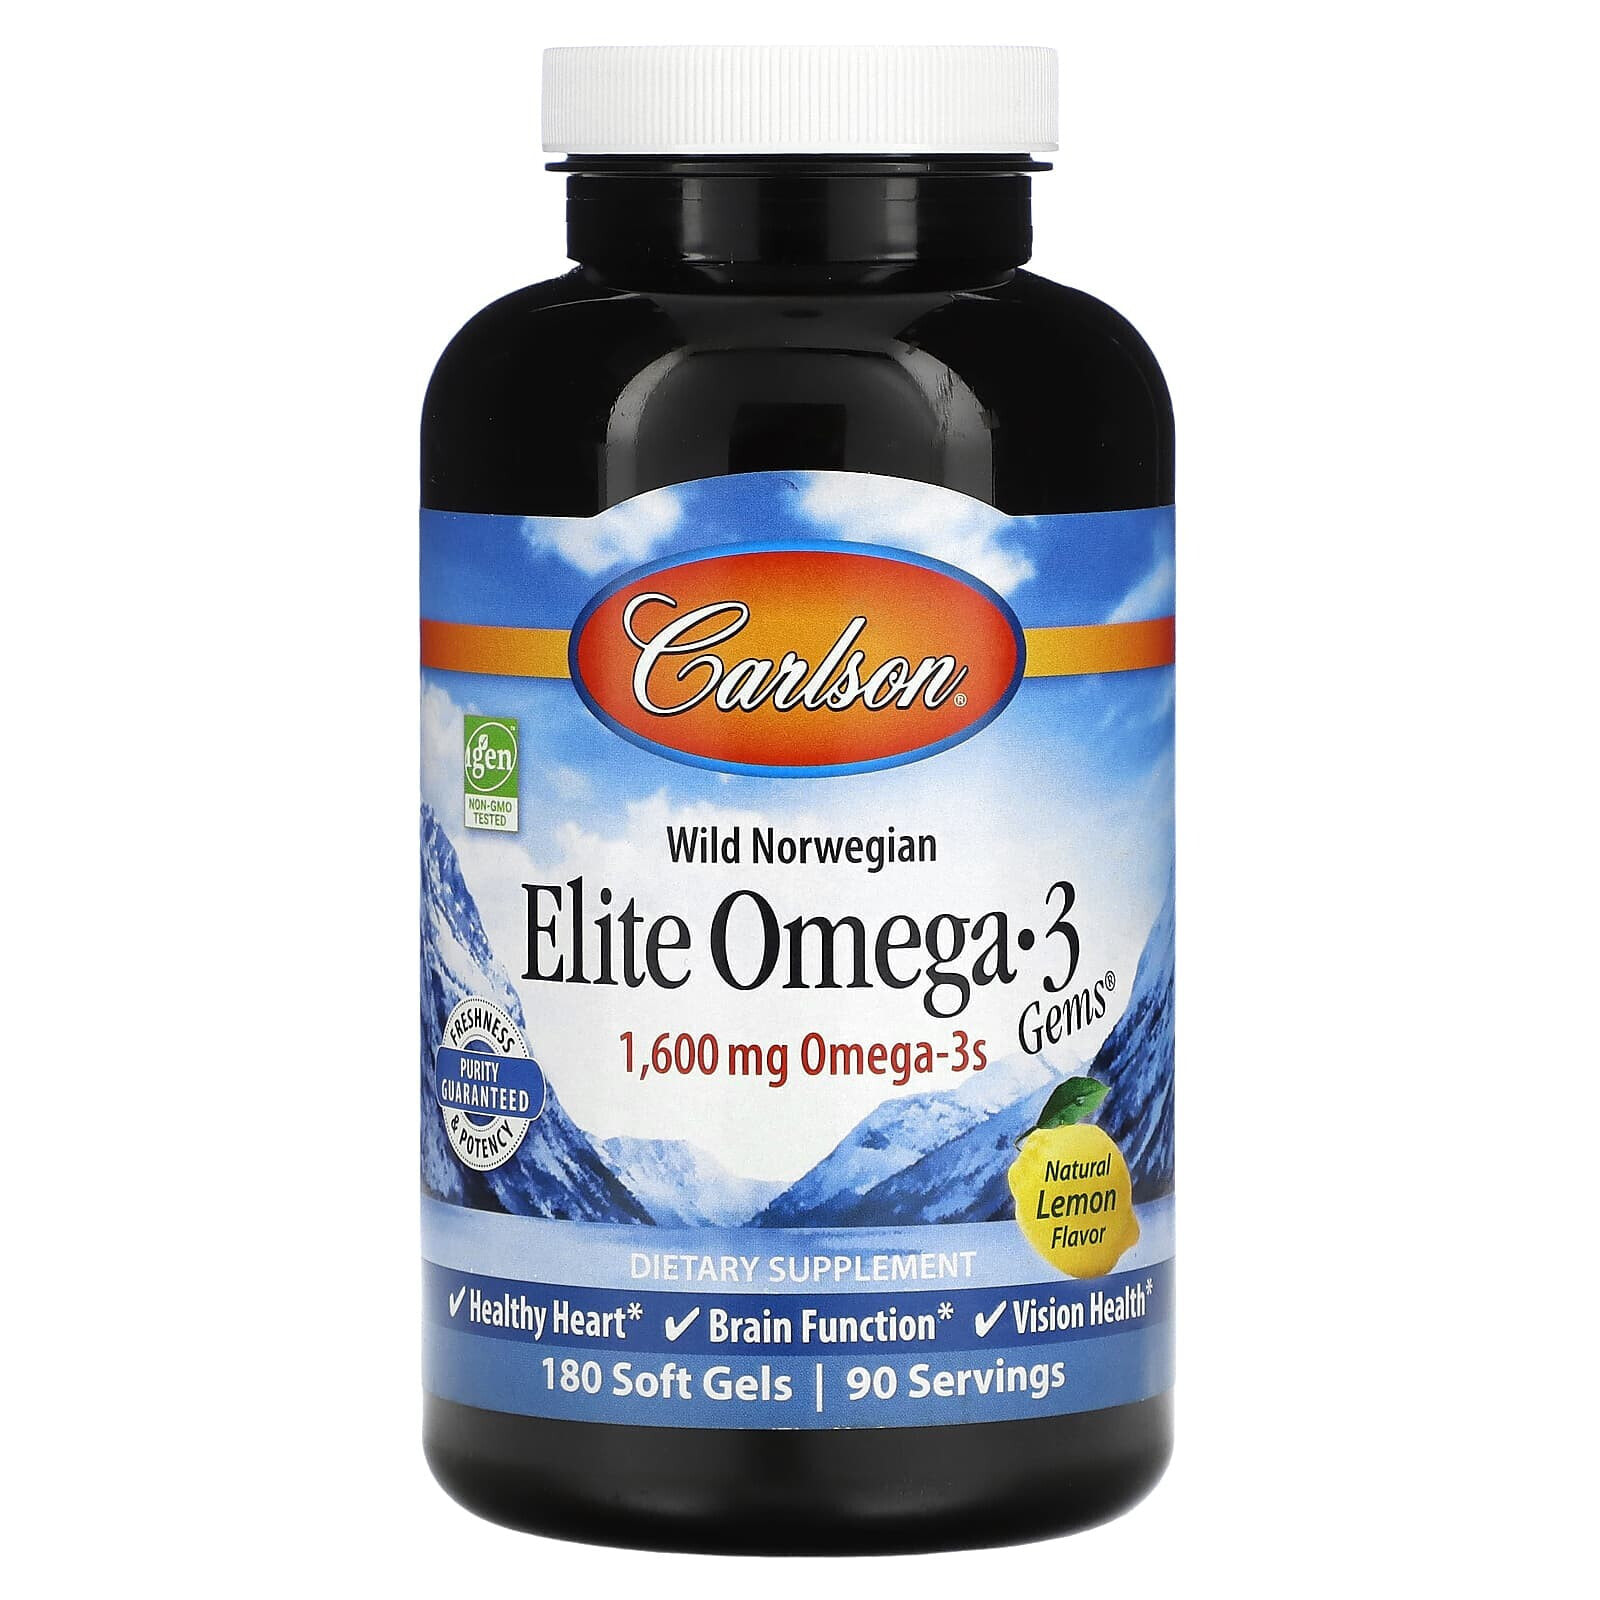 Carlson, Wild Norwegian, Elite Omega-3 Gems, Natural Lemon, 800 mg, 120 Soft Gels